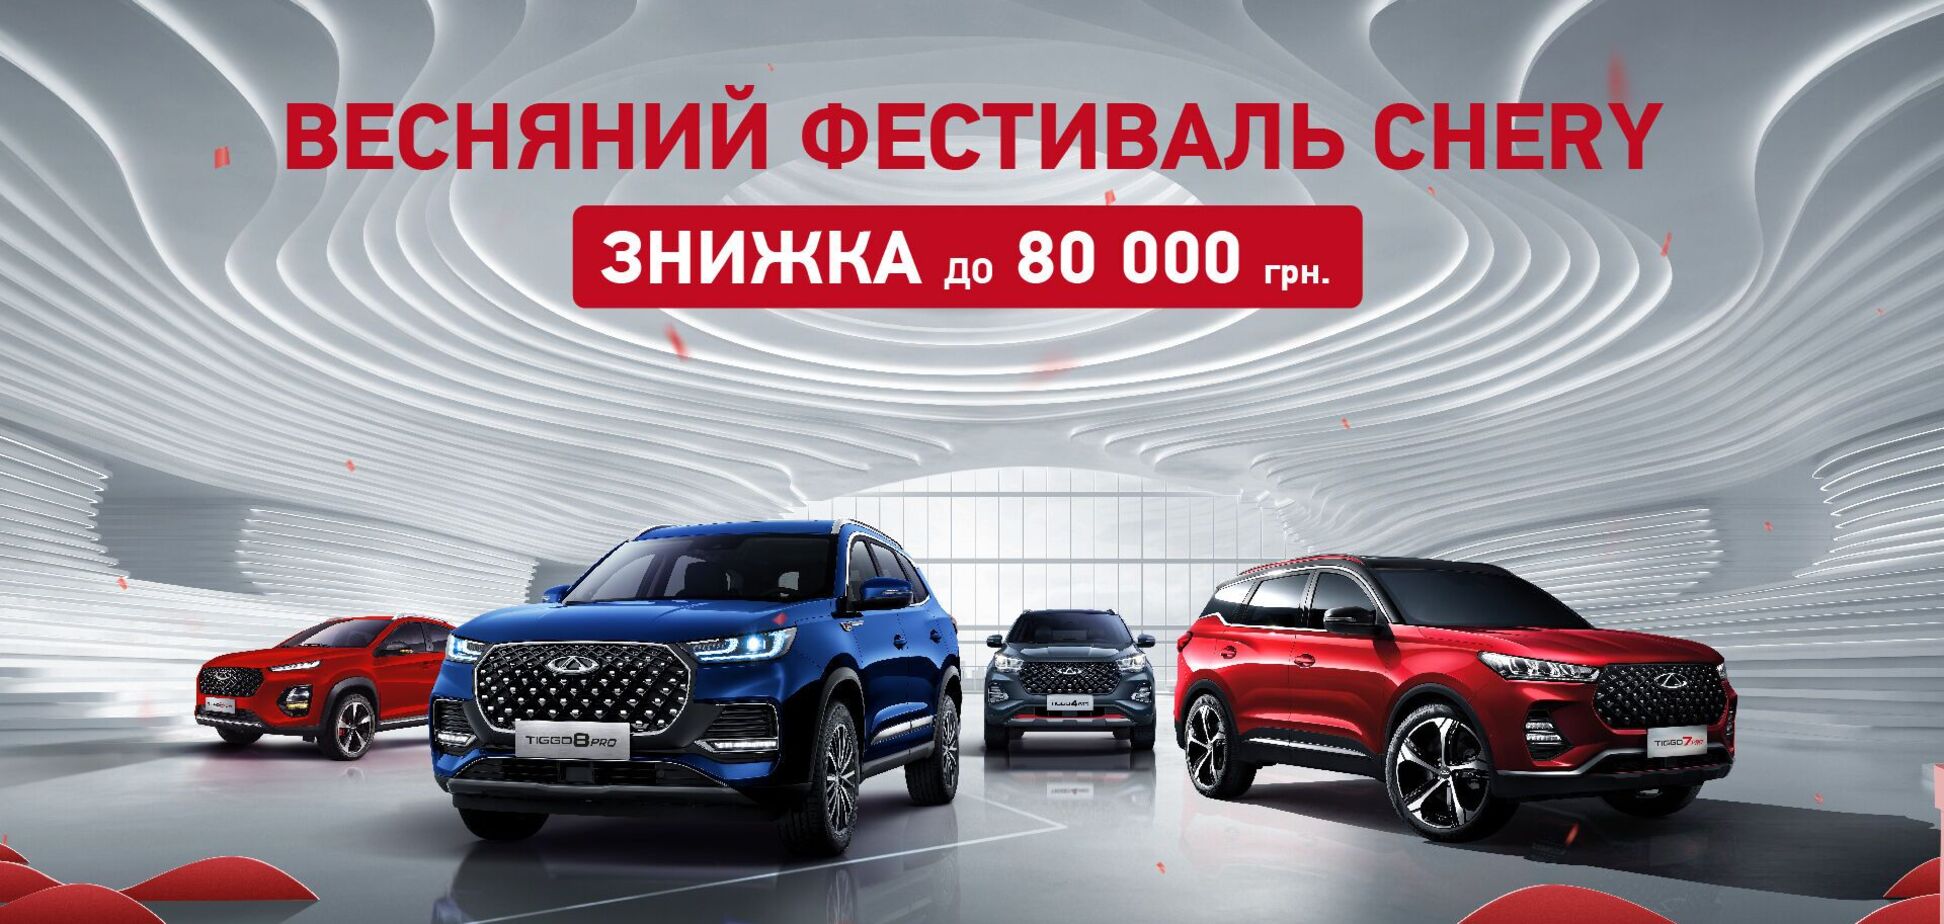 Весенний фестиваль Chery: известный бренд автомобилей дает возможность получить скидку до 80 тыс. грн